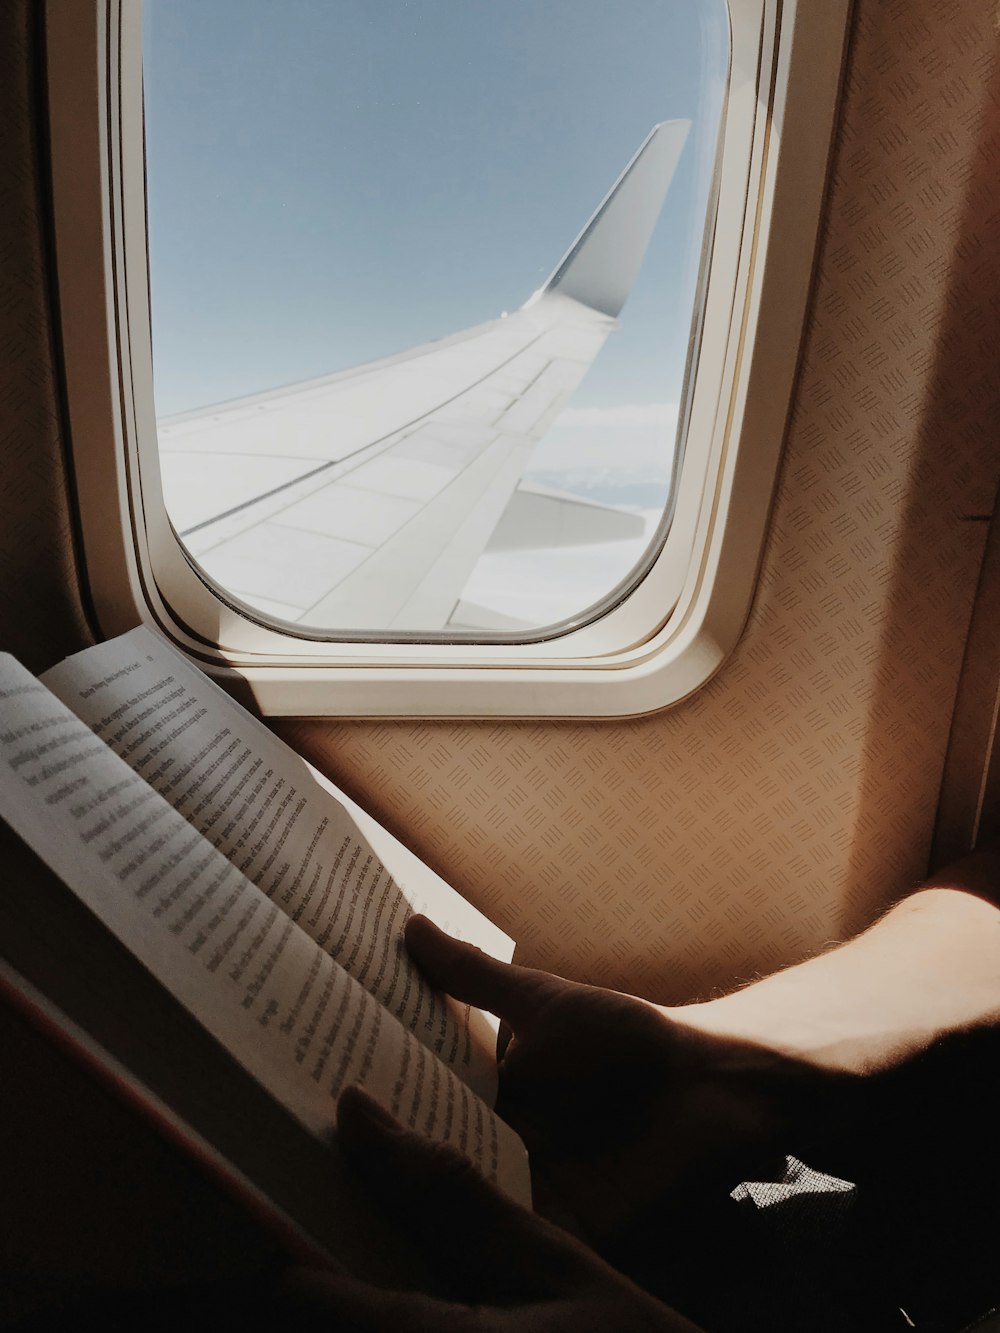 persona leyendo un libro al lado de la ventana del avión